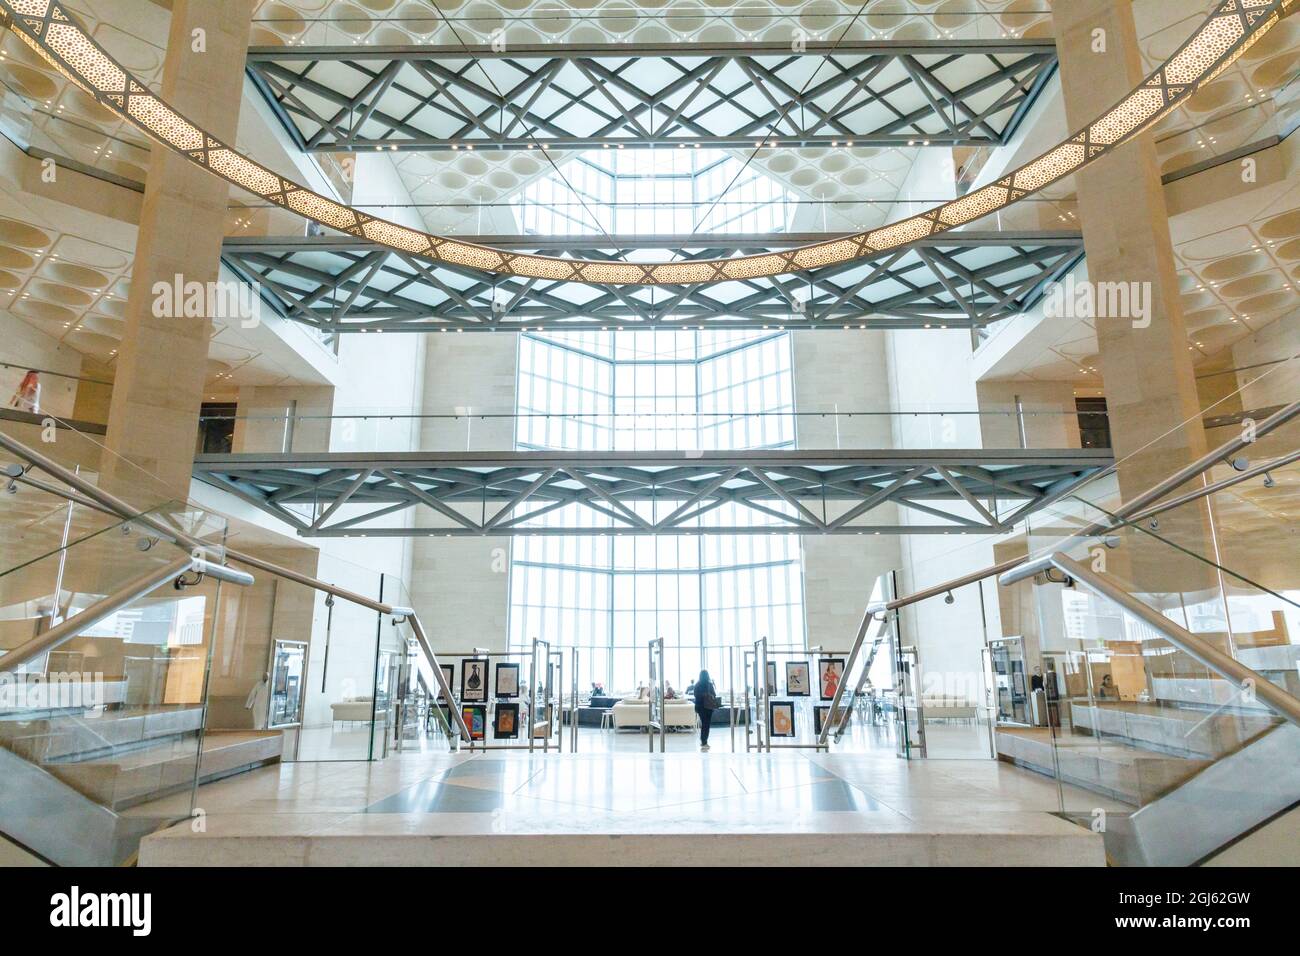 Katar, Doha. Innenraum des Museums für Islamische Kunst, erbaut 2008. Hauptwendeltreppe. Raumhohe Fenster. (Nur Für Redaktionelle Zwecke) Stockfoto